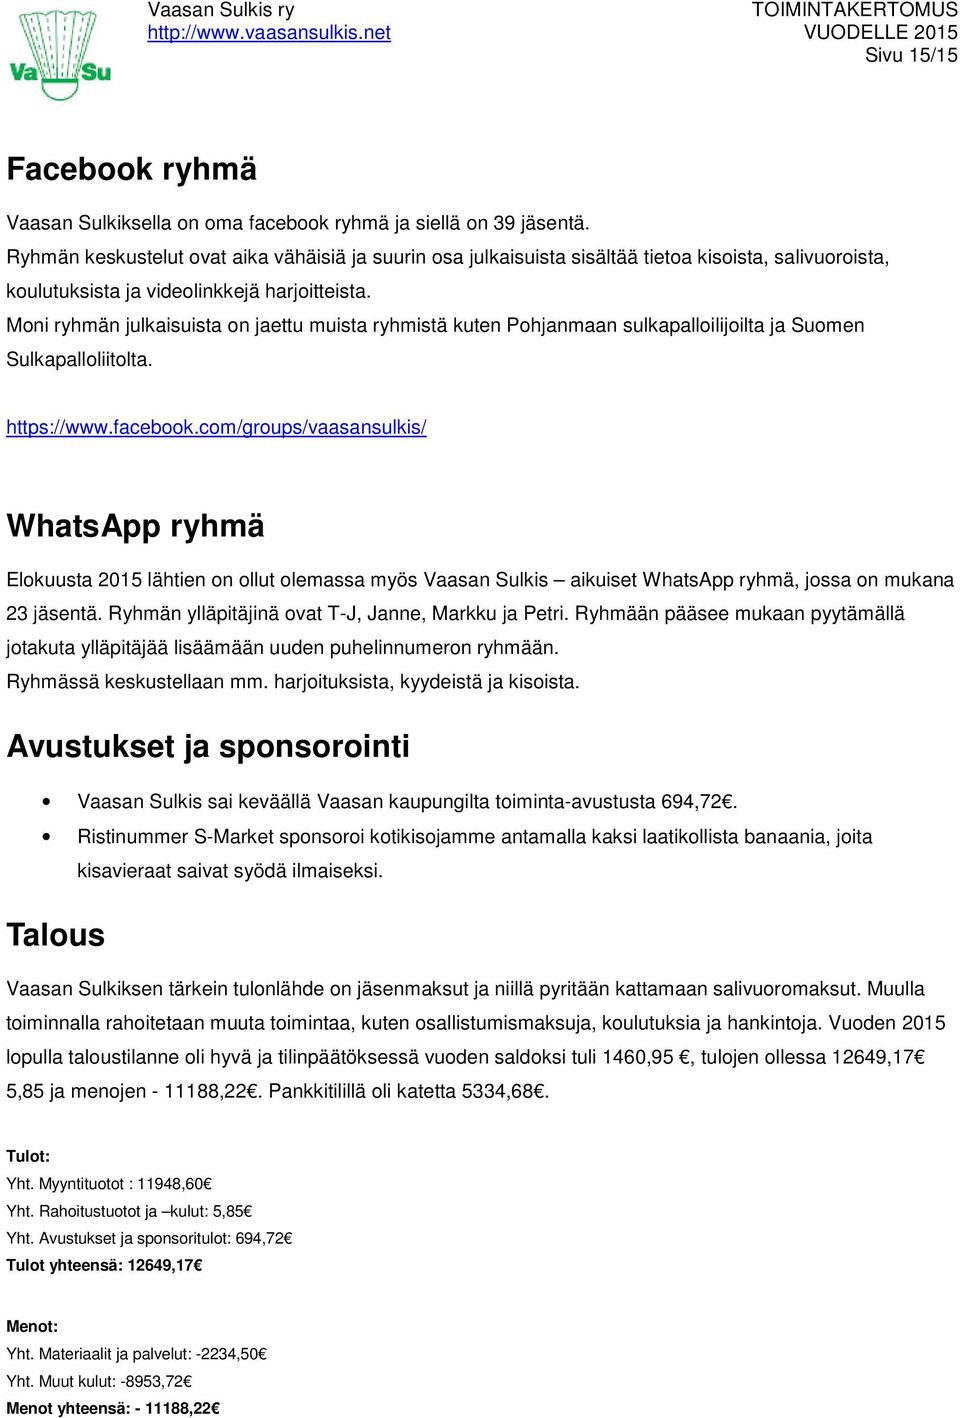 Moni ryhmän julkaisuista on jaettu muista ryhmistä kuten Pohjanmaan sulkapalloilijoilta ja Suomen Sulkapalloliitolta. https://www.facebook.